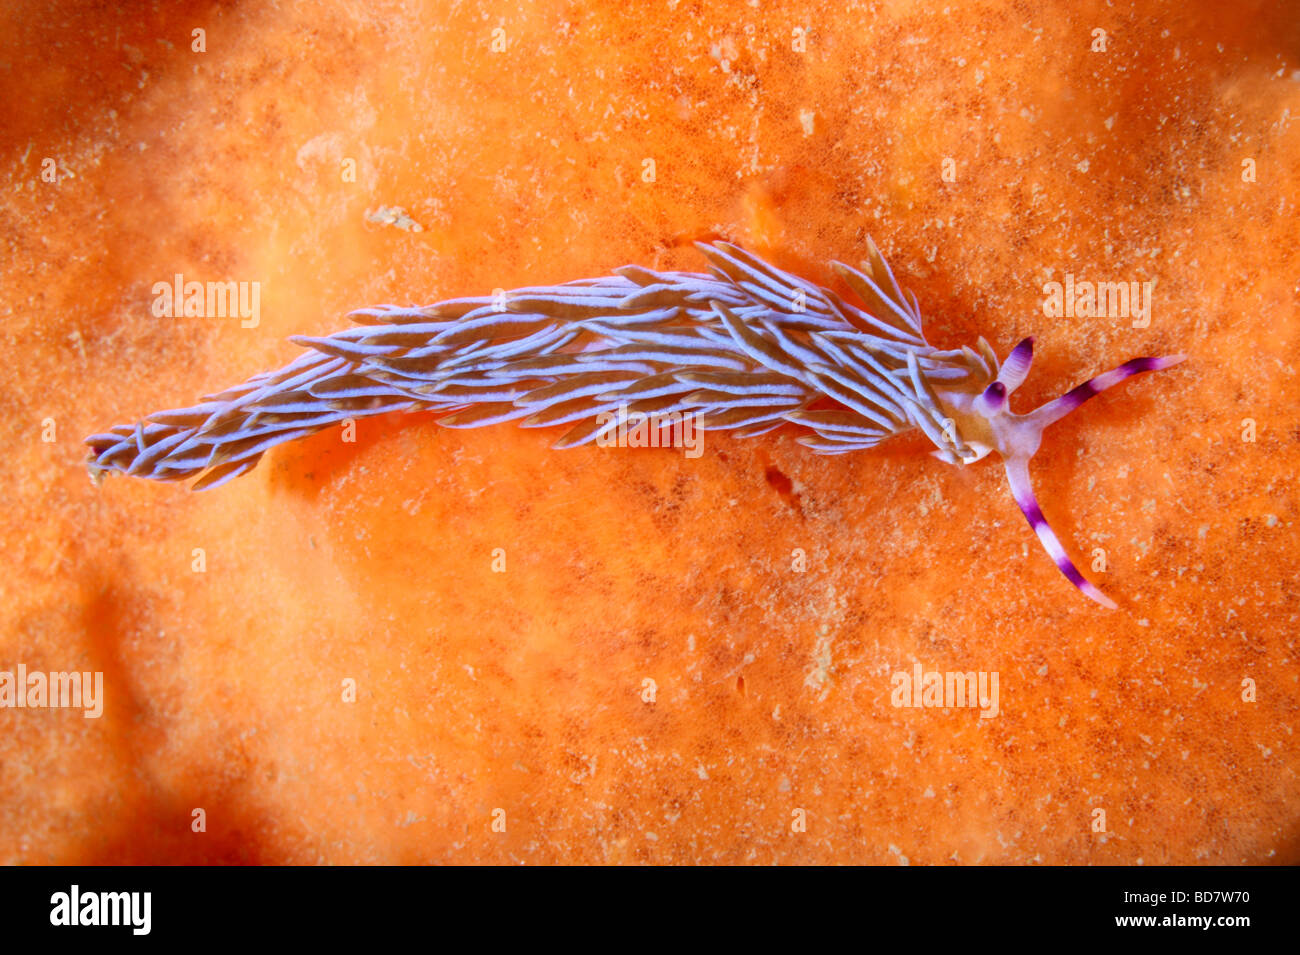 blue dragon sea slug eggs